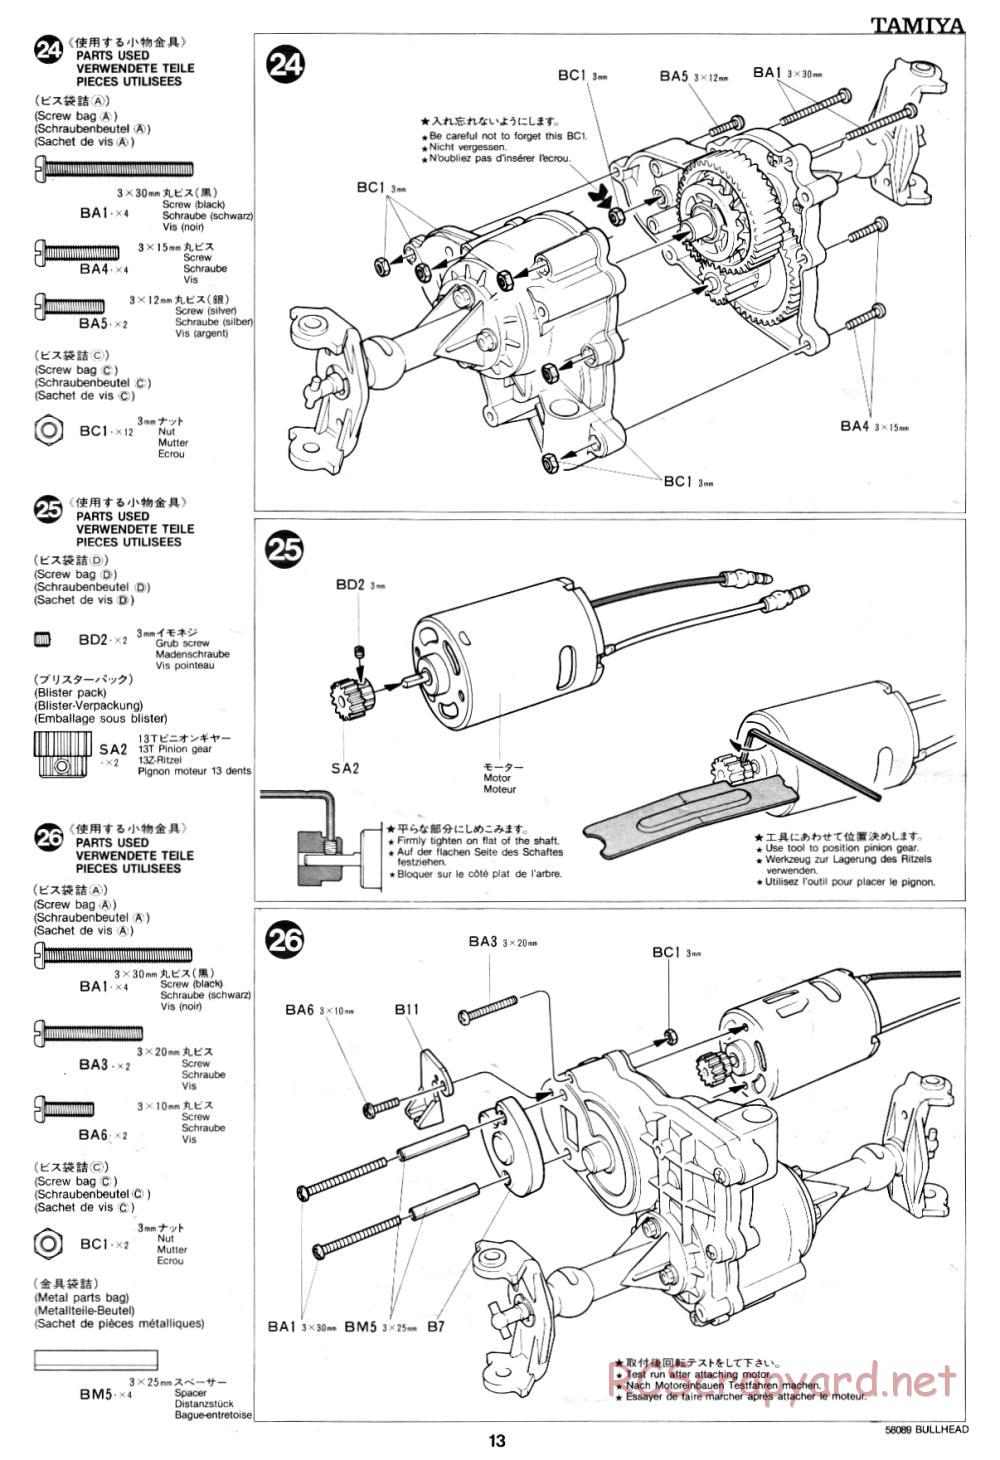 Tamiya - Bullhead - 58089 - Manual - Page 13